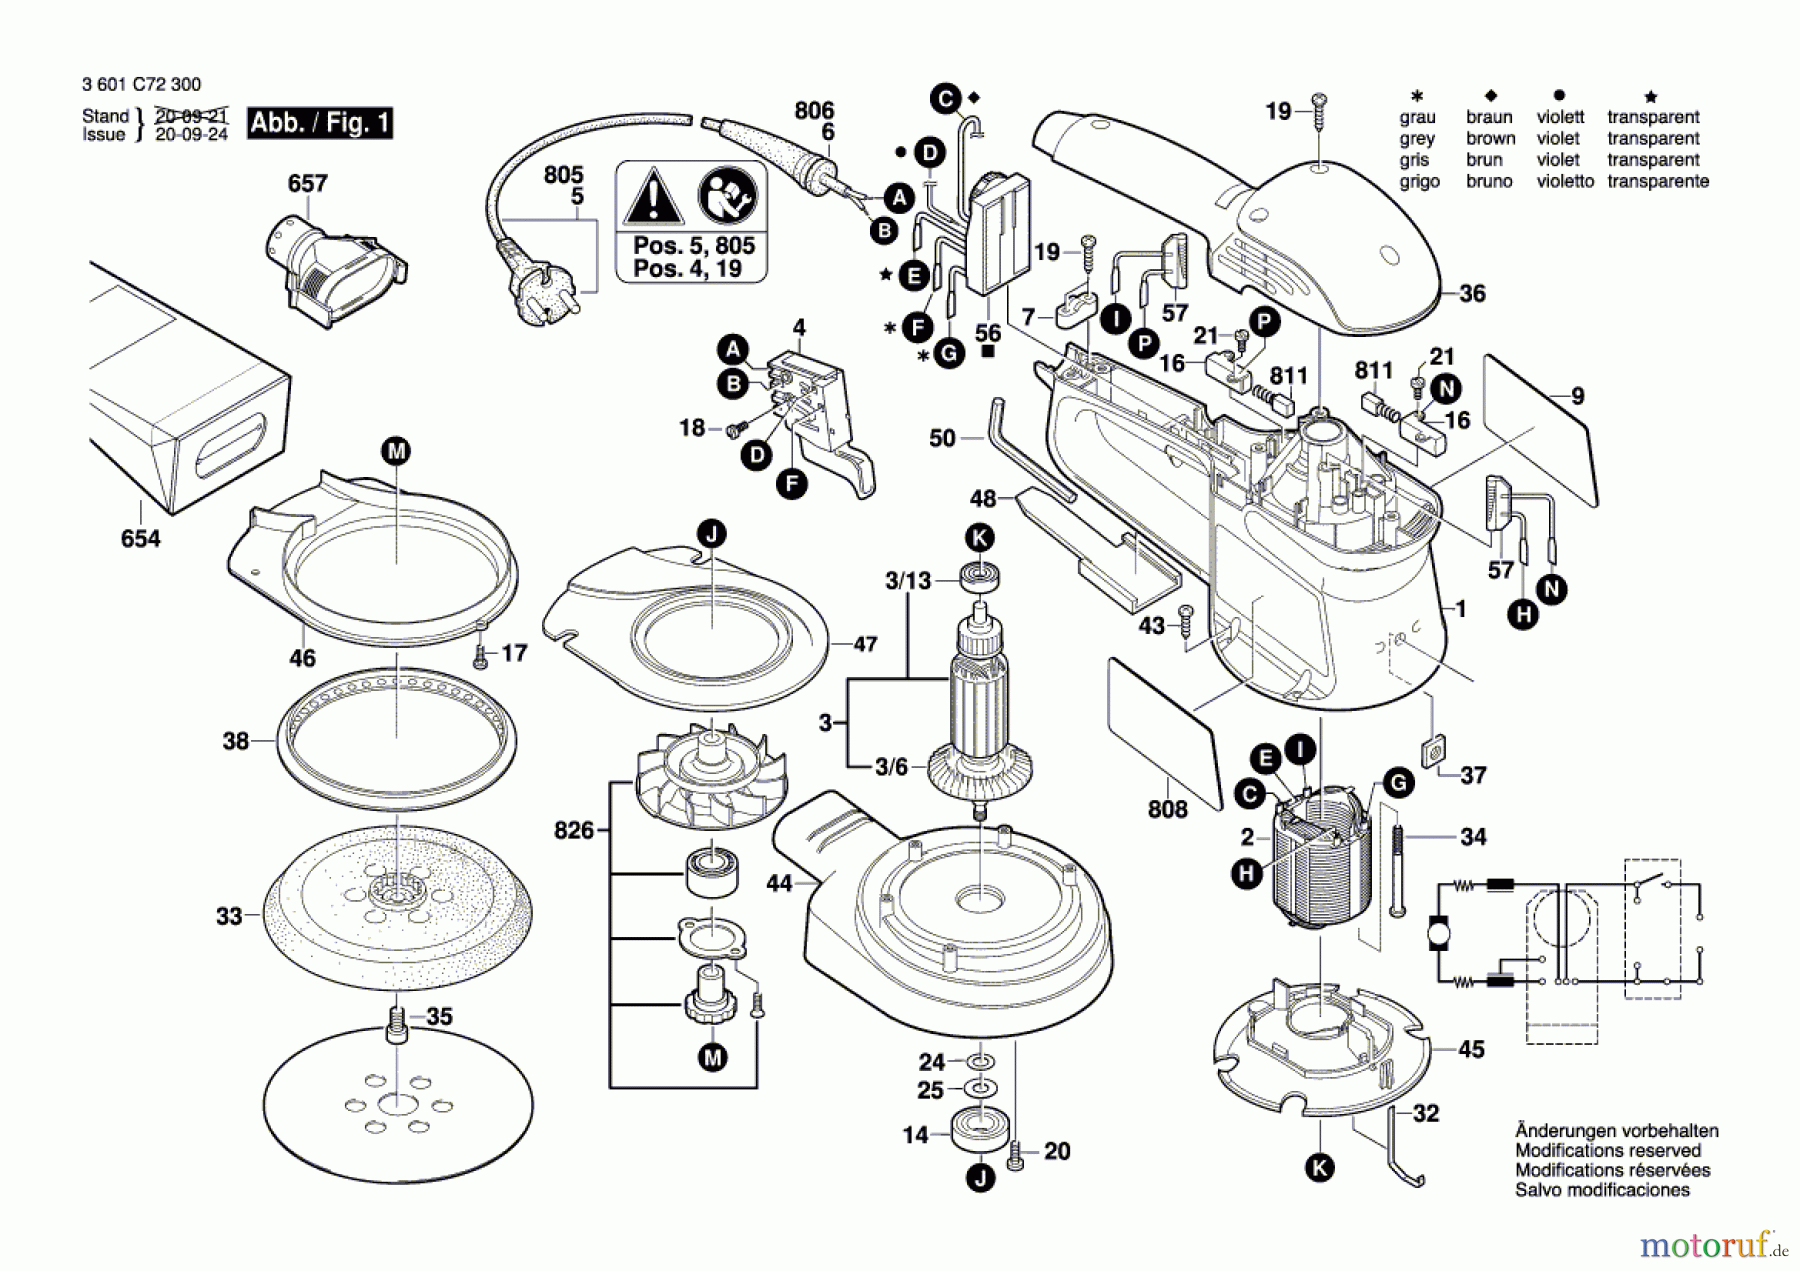  Bosch Werkzeug Exzenterschleifer GEX 34-125 Seite 1